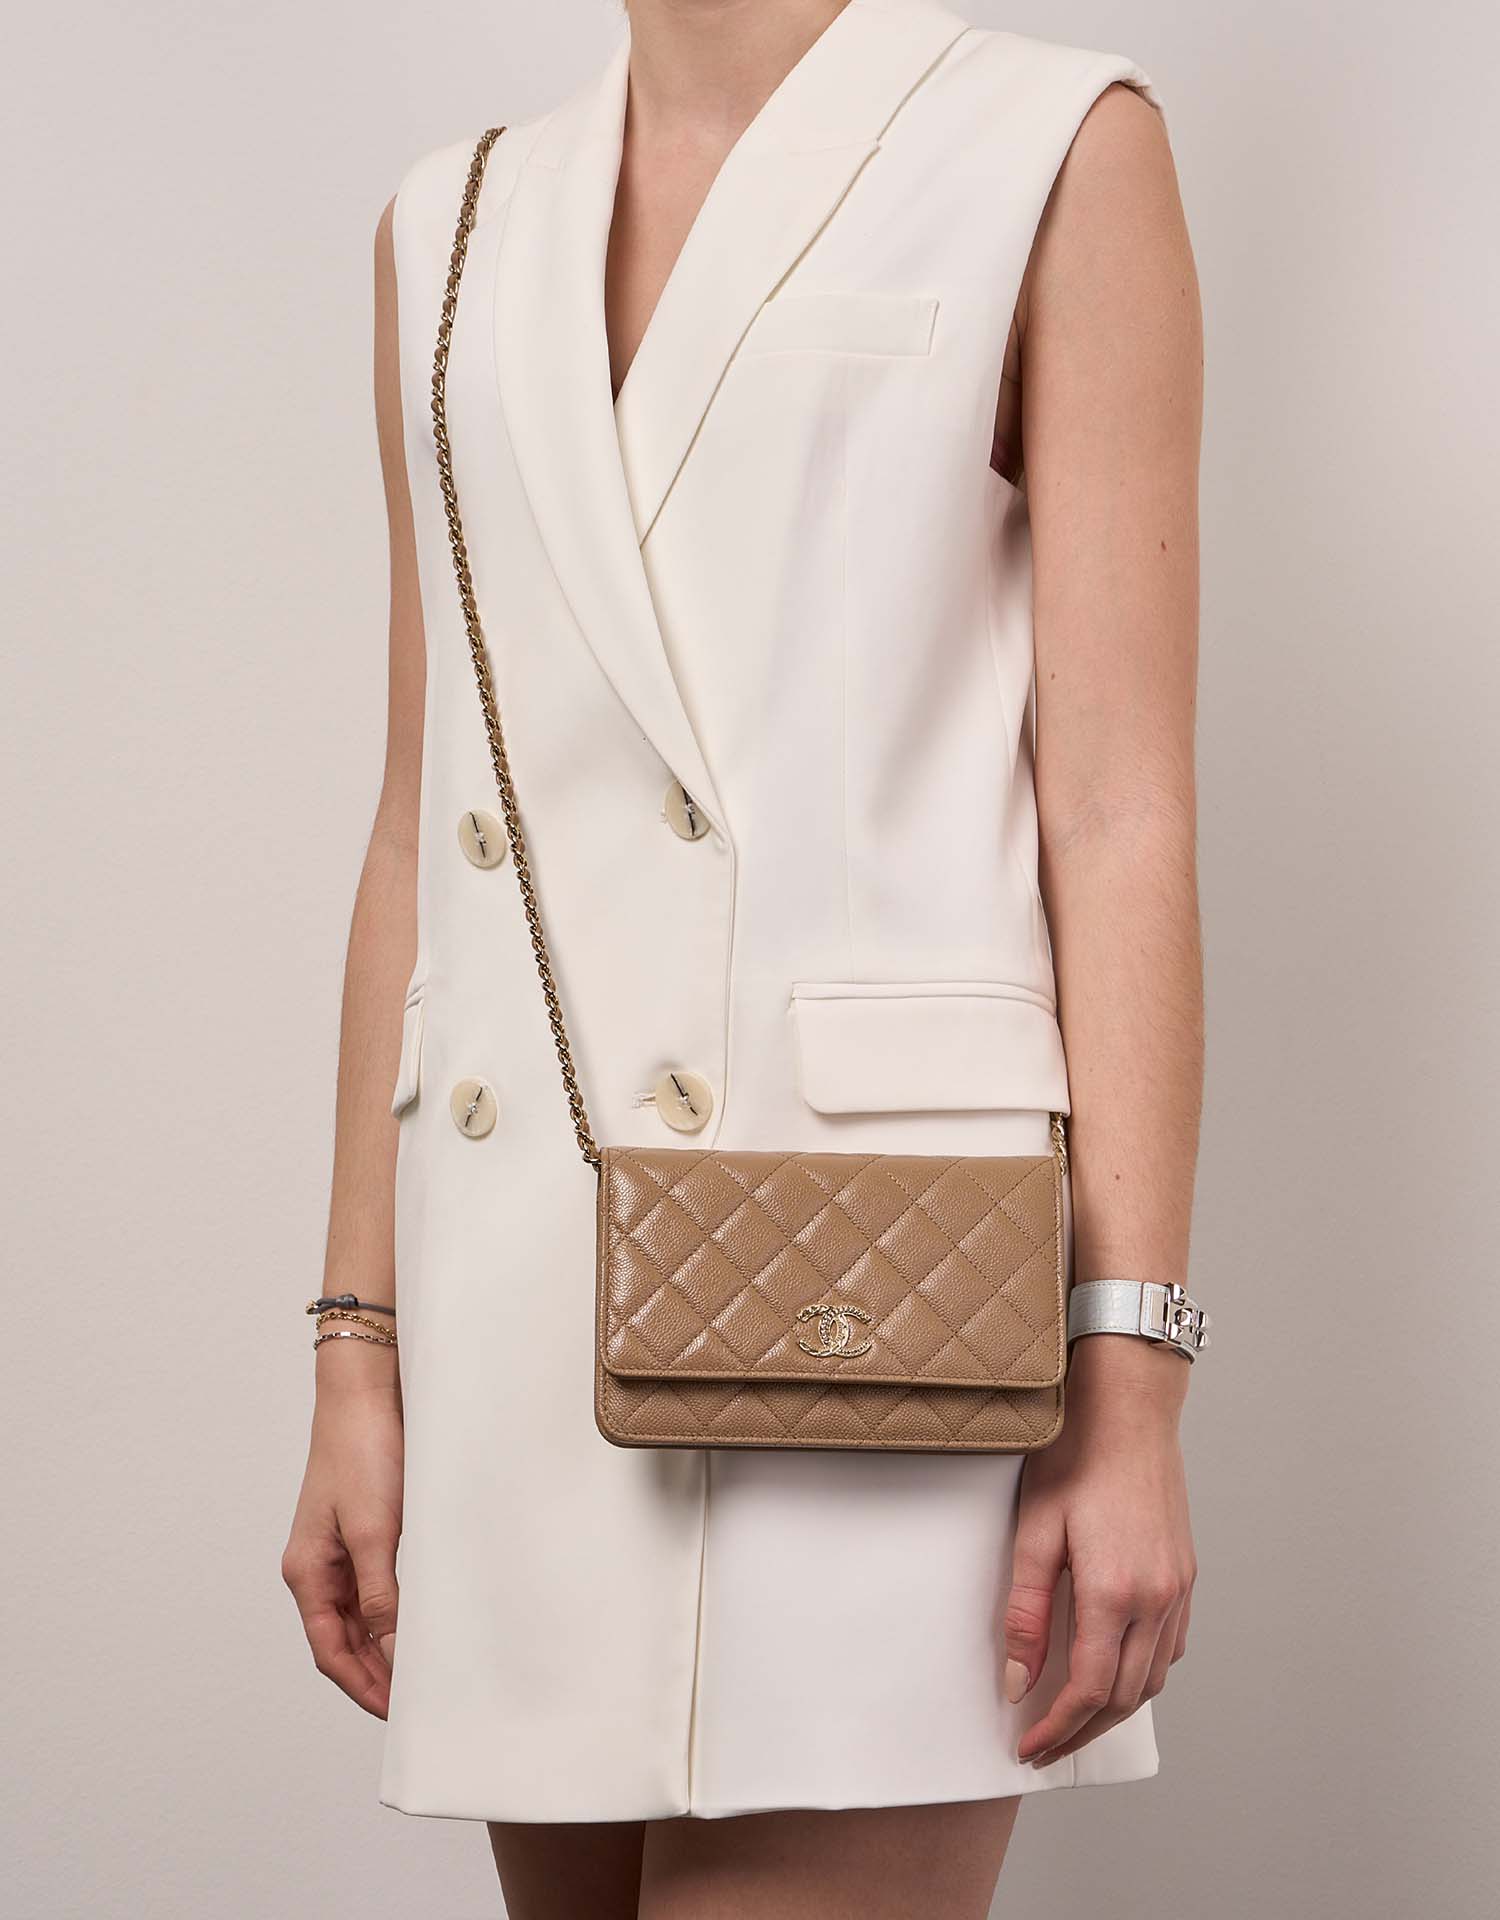 Chanel Timeless WOC Beige 1M | Verkaufen Sie Ihre Designer-Tasche auf Saclab.com